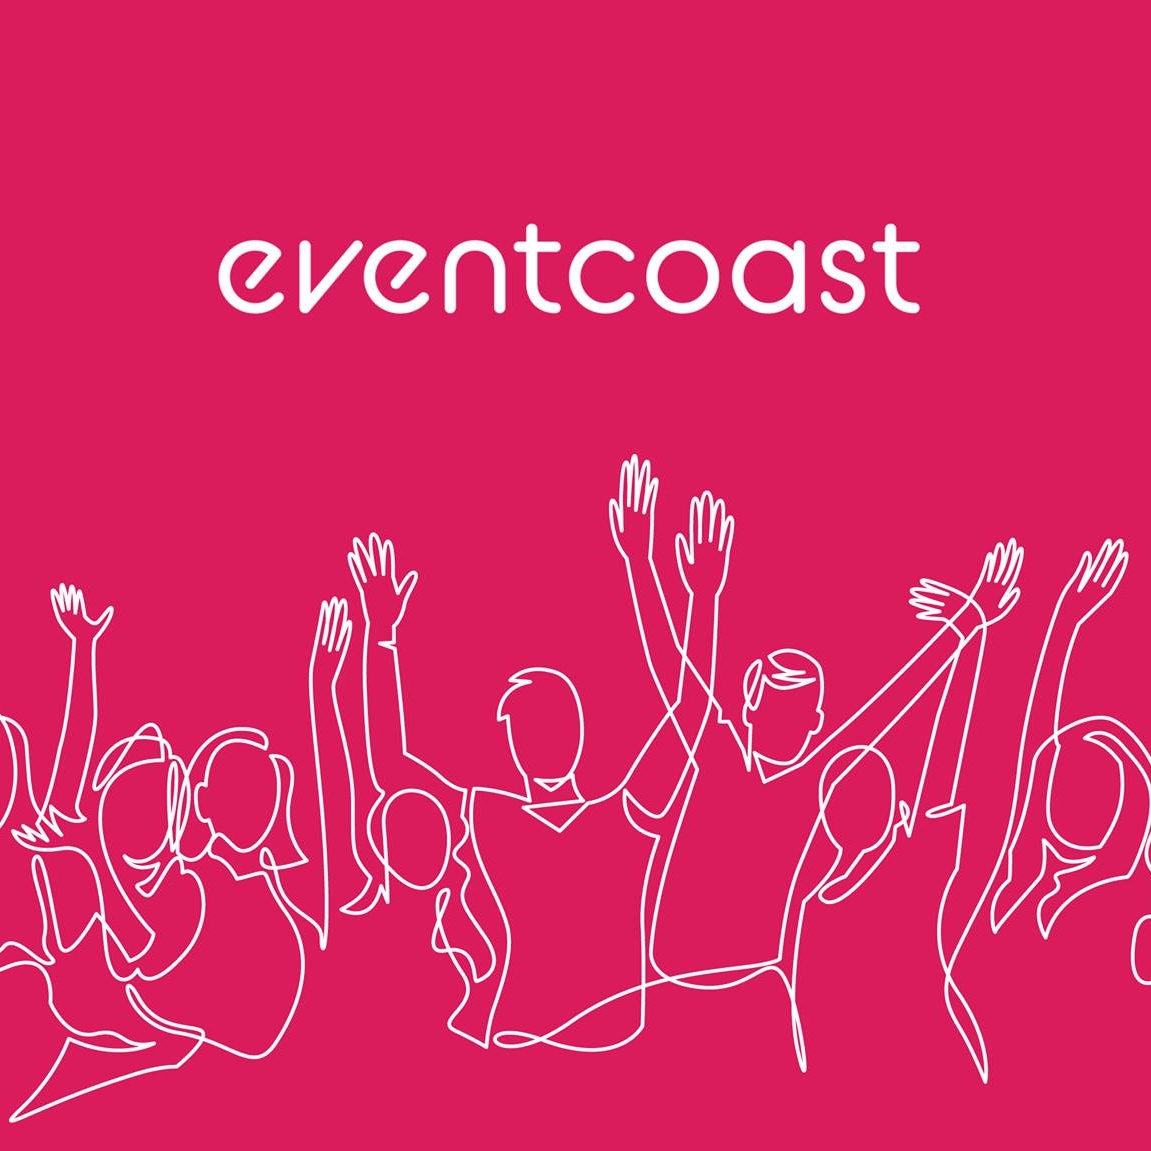 Eventcoast / Prizztech mukana rekryboost 2023 matkailu, majoitus- ja ravintola-alan rekrytointimessuilla